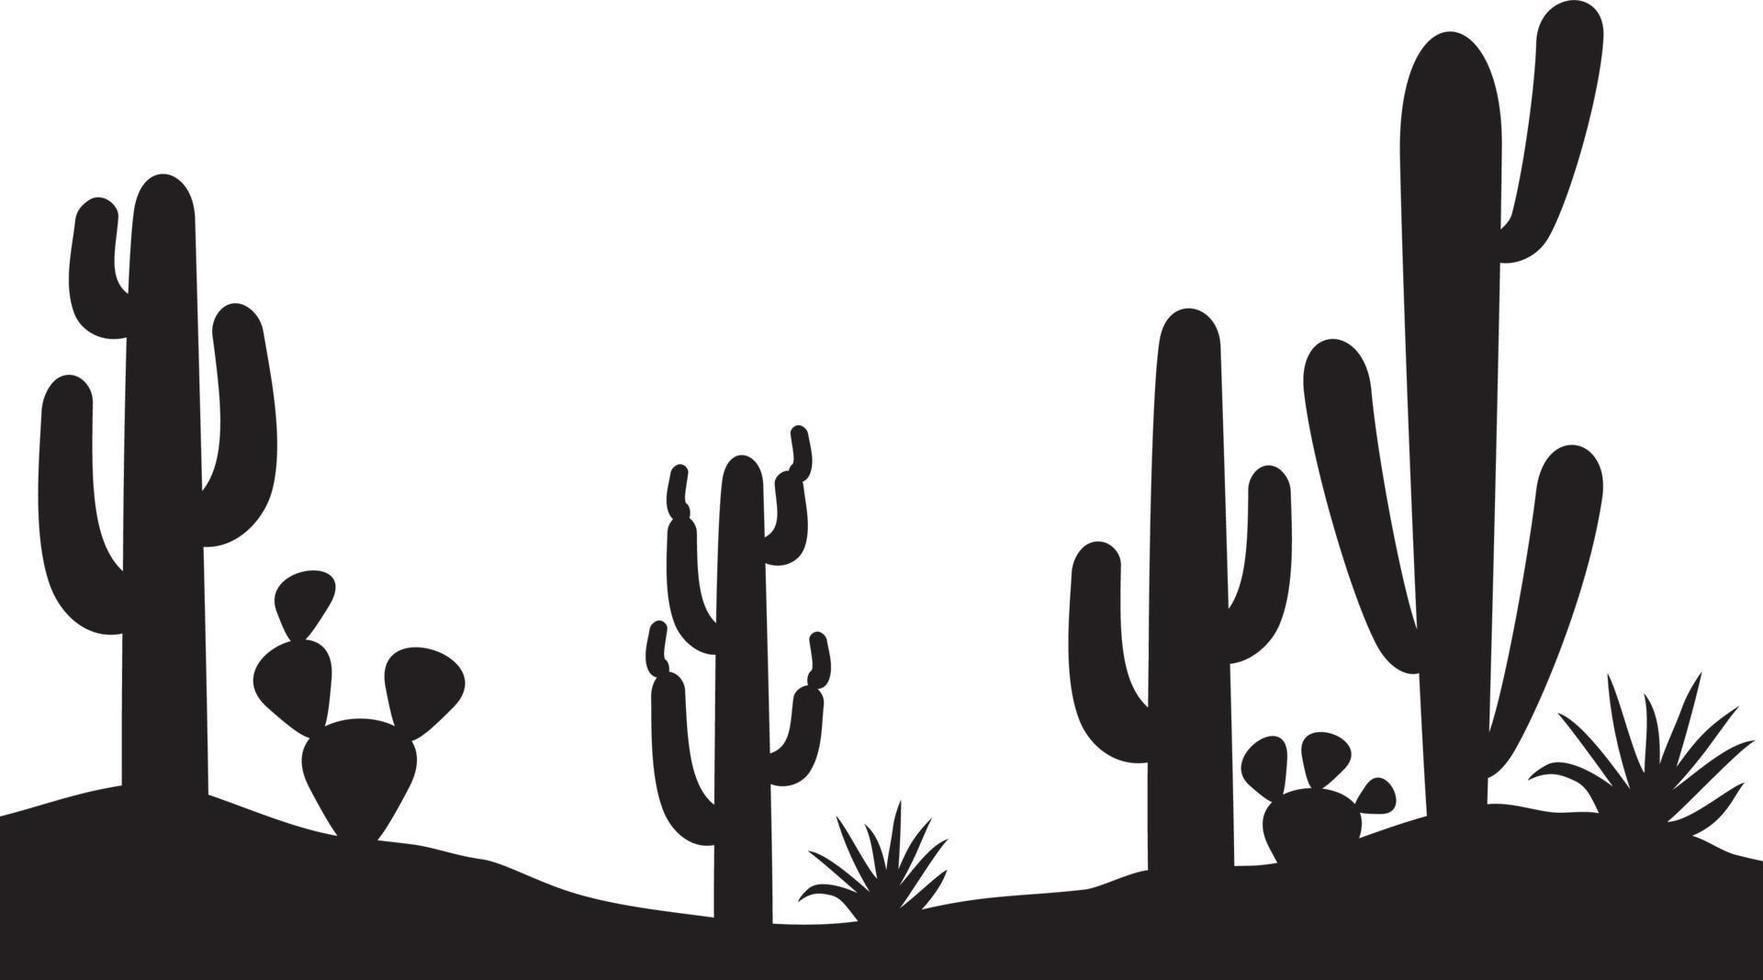 Landscape with Cactus Plants vector